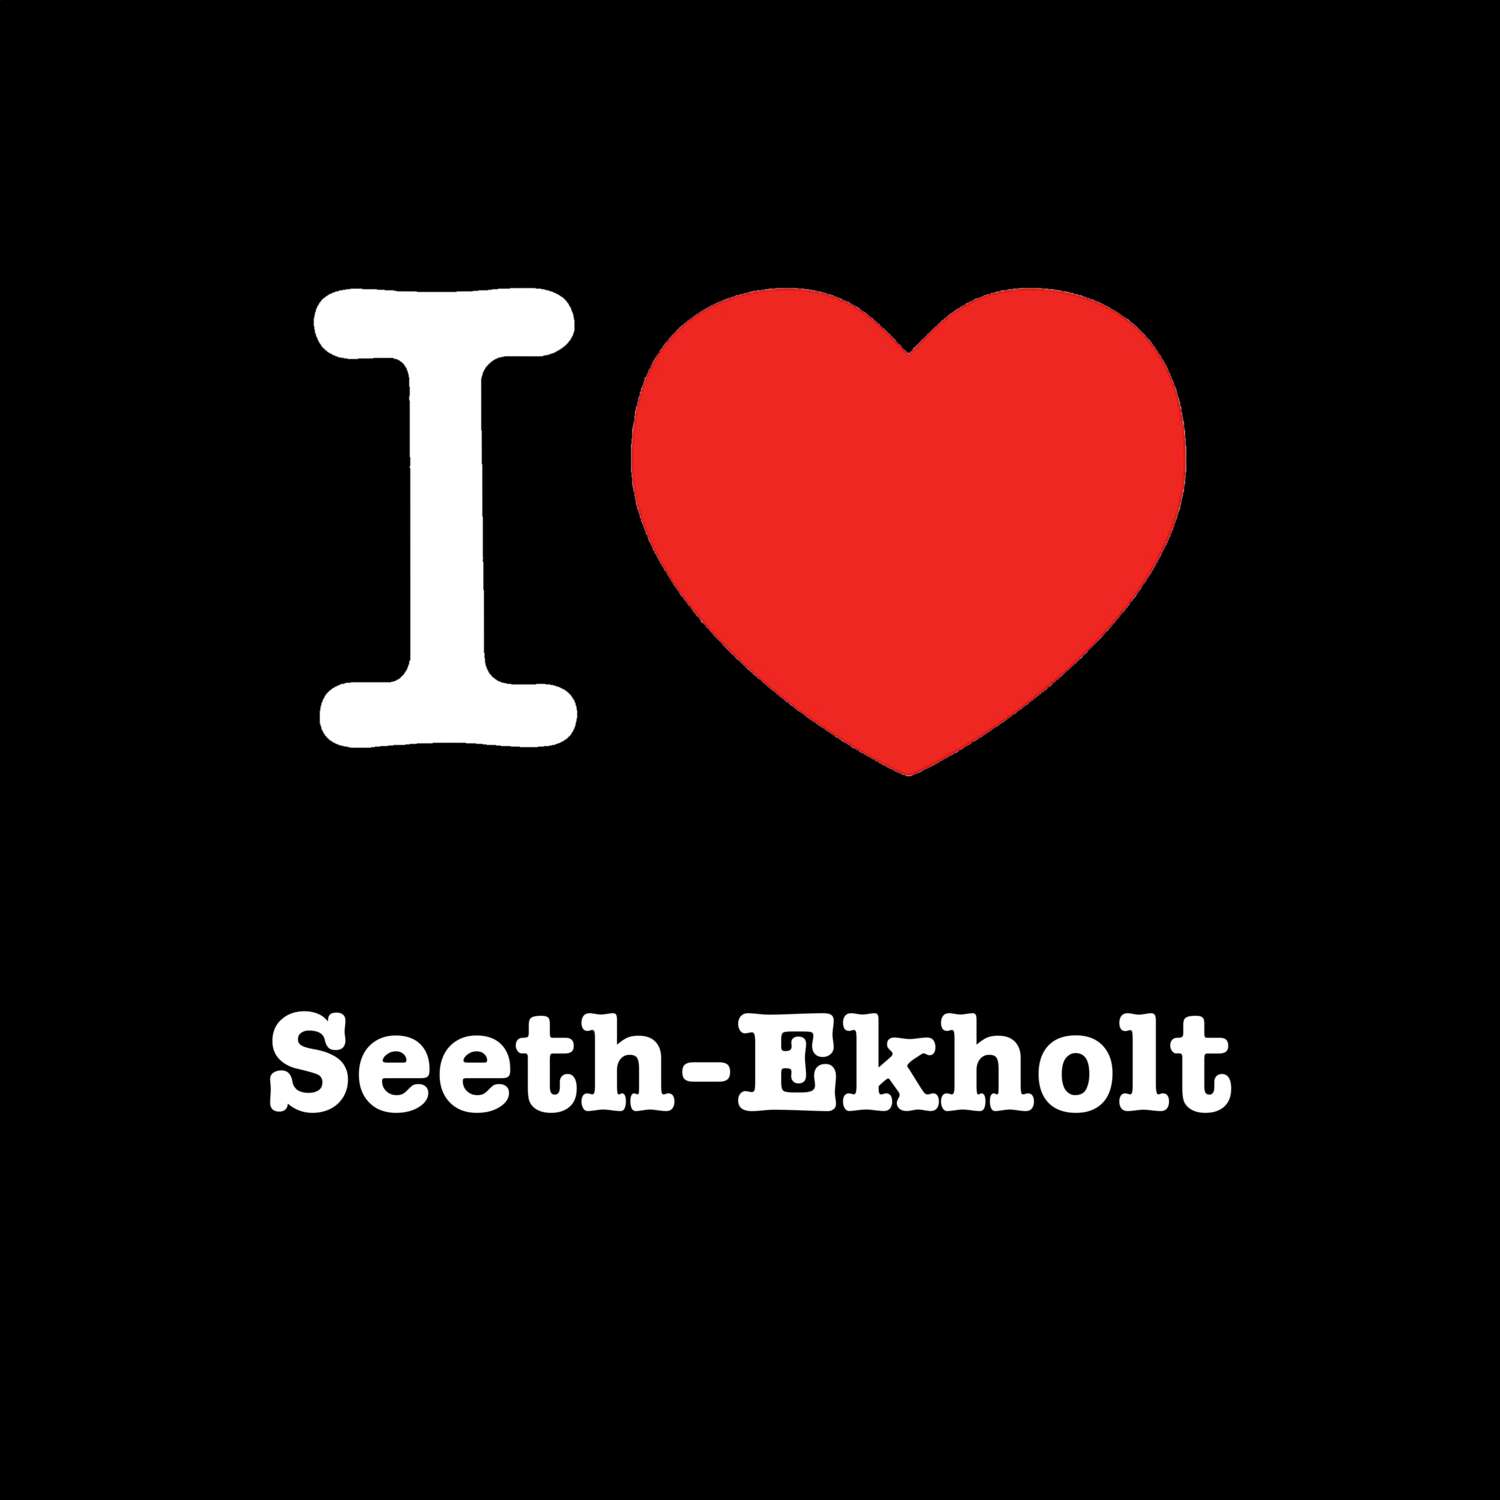 Seeth-Ekholt T-Shirt »I love«